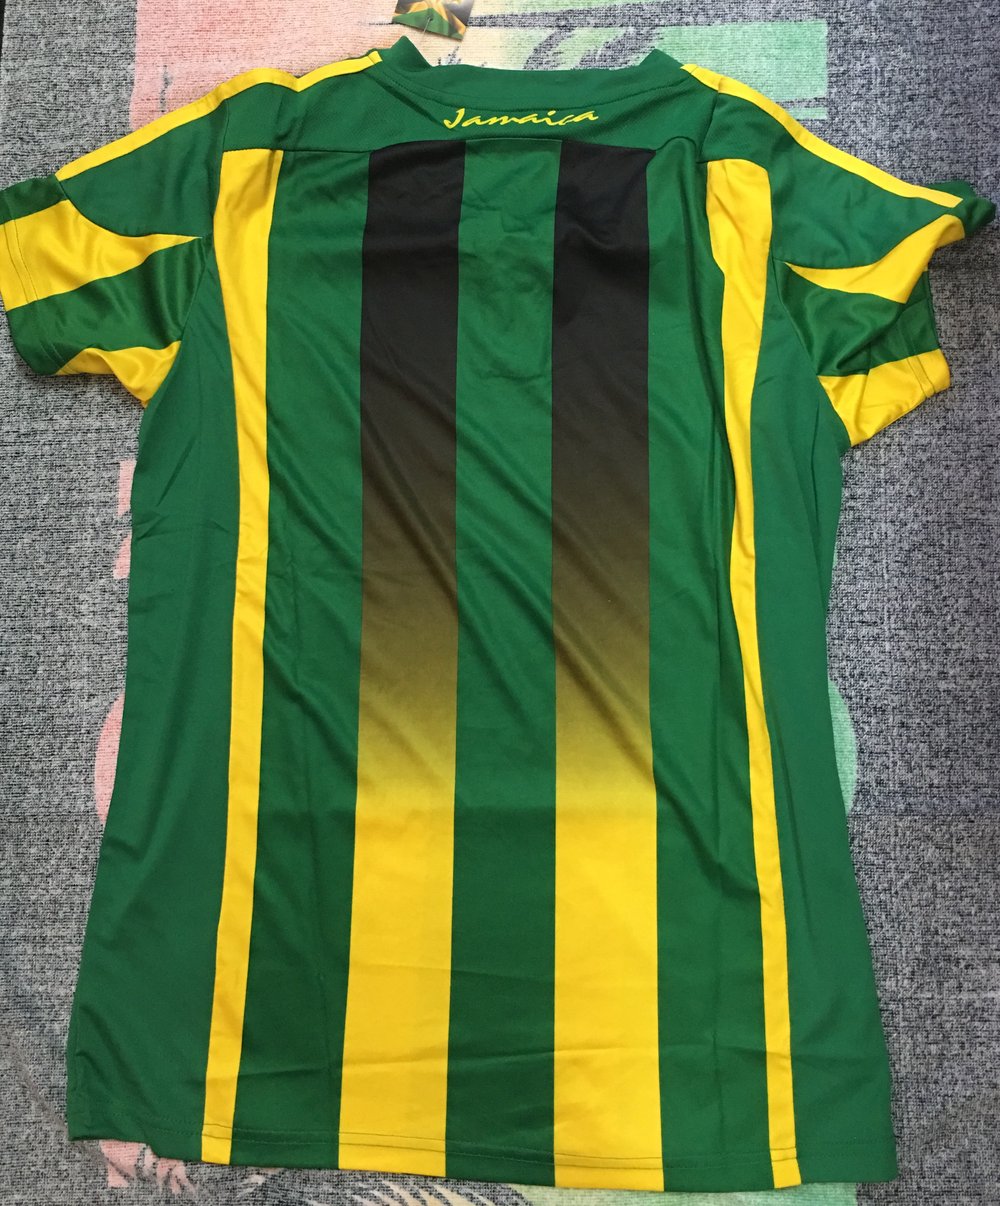 Green Jamaica Football Jersey